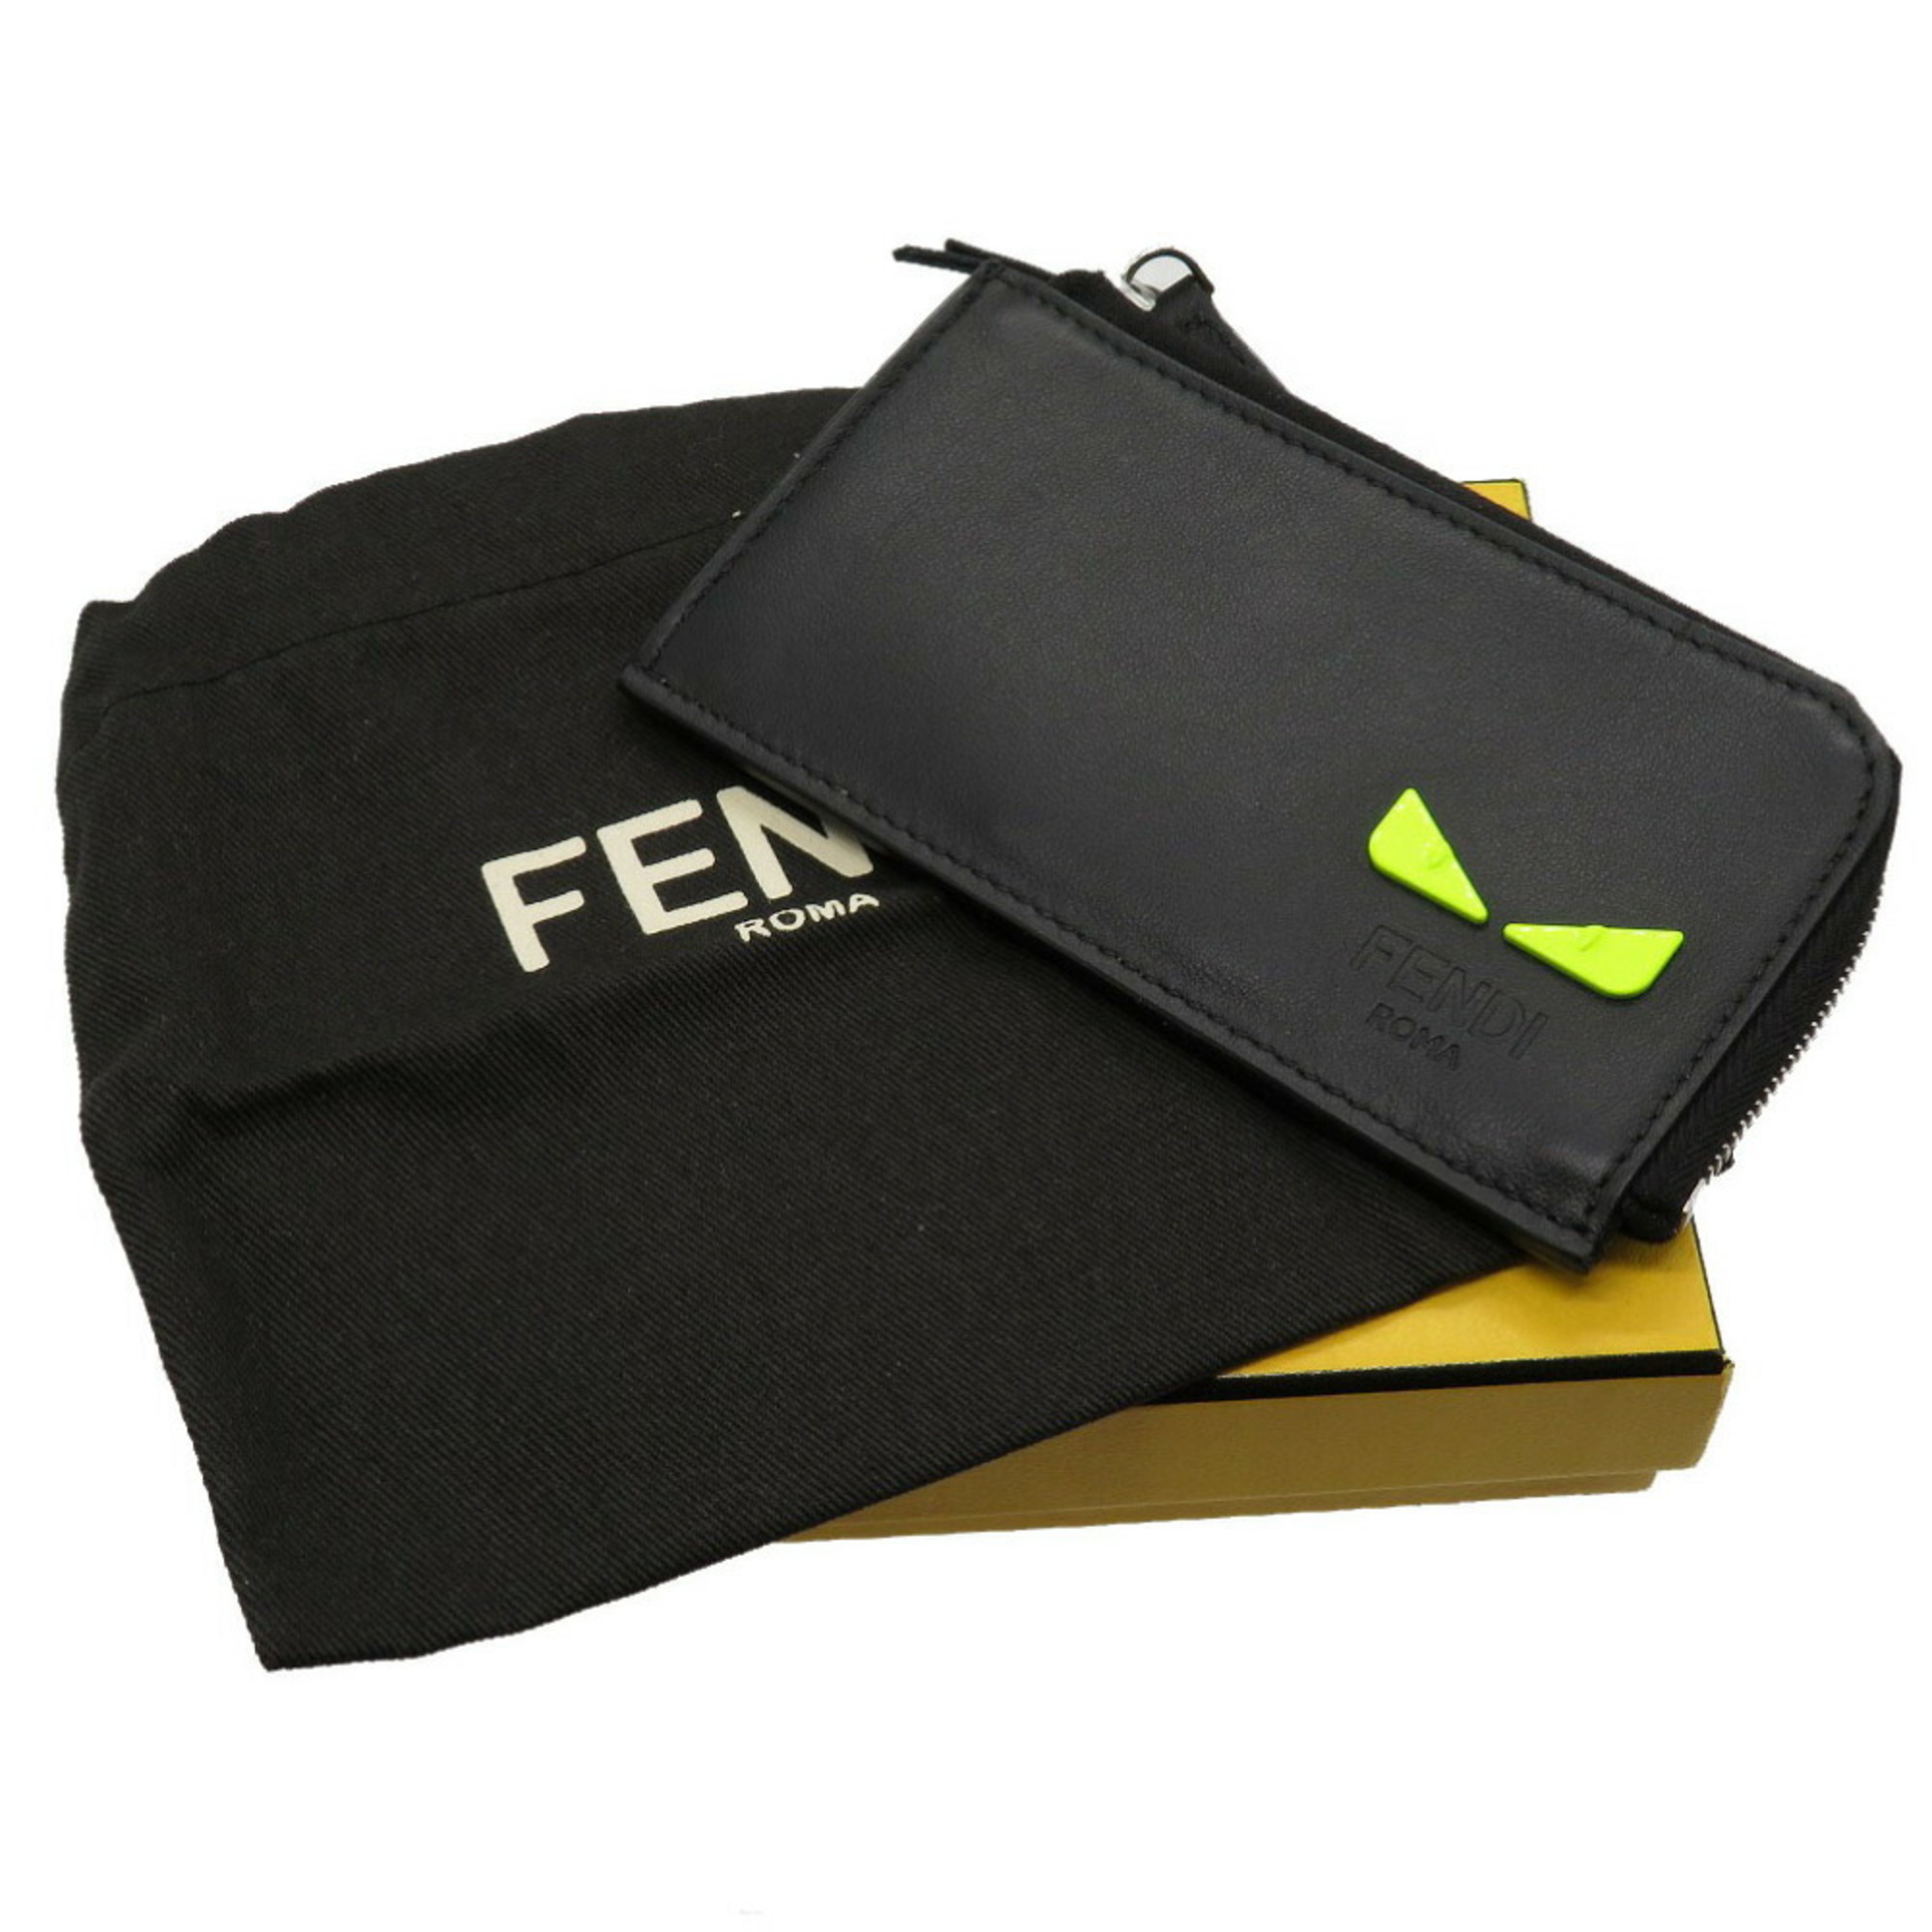 Fendi Monster Leather Black 7M0270 Coin Case Purse Wallet 0122 FENDI Men's 6B0122IGZ5